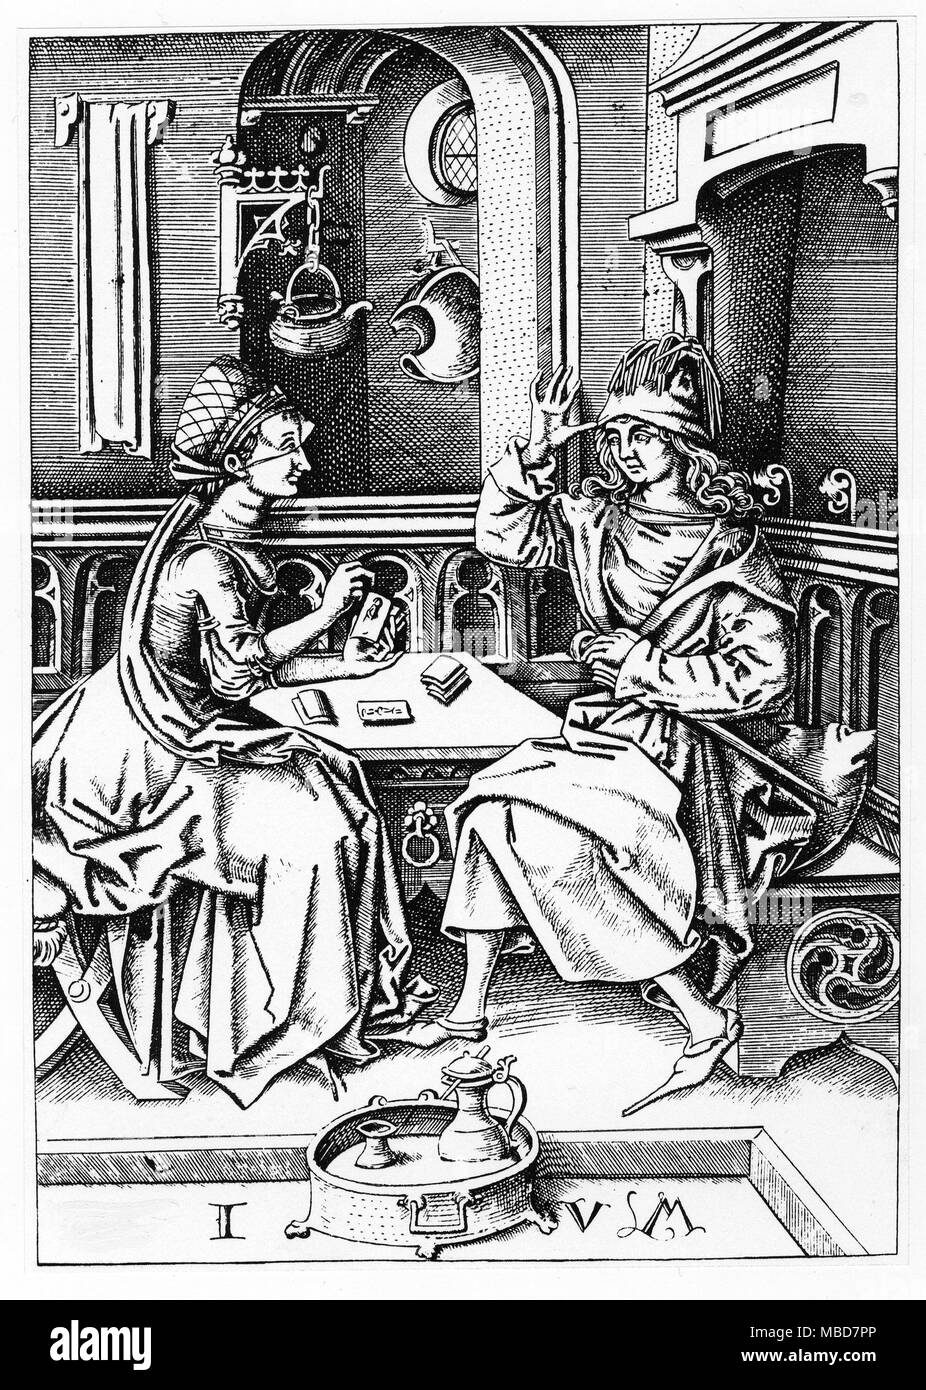 TAROT - CARTOMANCY - SPIELKARTEN Gravur zurückzuführen auf Israel van Mecken (Ende des 15. Jahrhunderts), zeigen einen Mann und eine Frau, Karten spielen, oder vielleicht Anhörung des Tarot. Von Samuel Weller Sänger reproduziert, erforscht die Geschichte der Spielkarten, 1816. Stockfoto